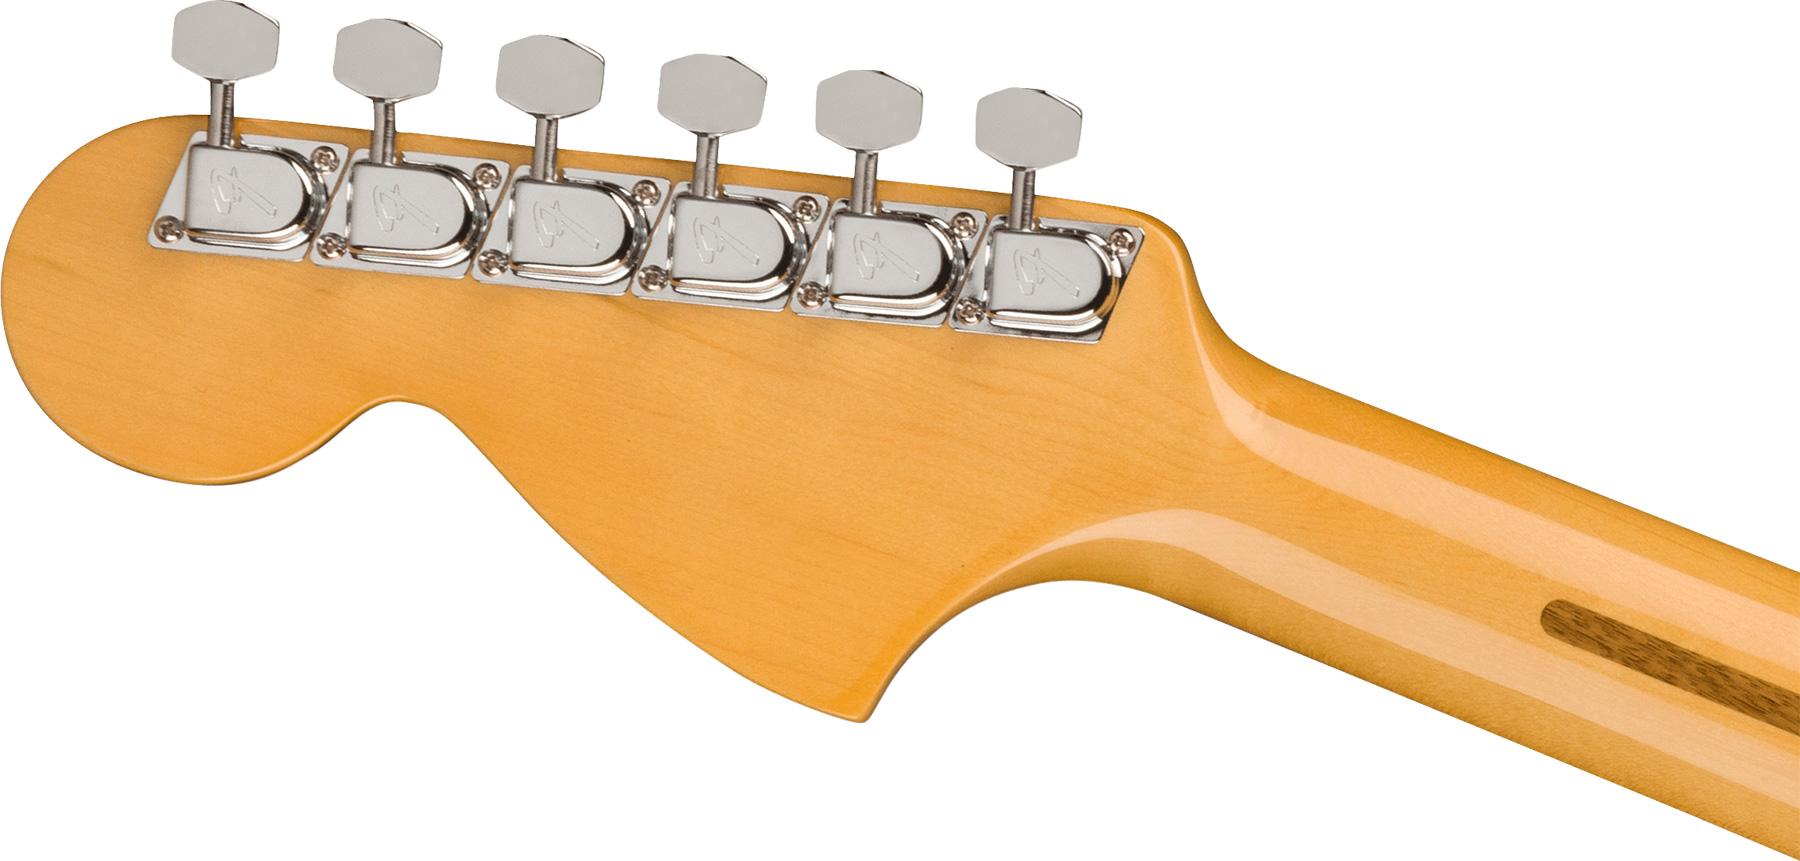 Fender Strat 1973 American Vintage Ii Usa 3s Trem Rw - Aged Natural - Guitare Électrique Forme Str - Variation 3